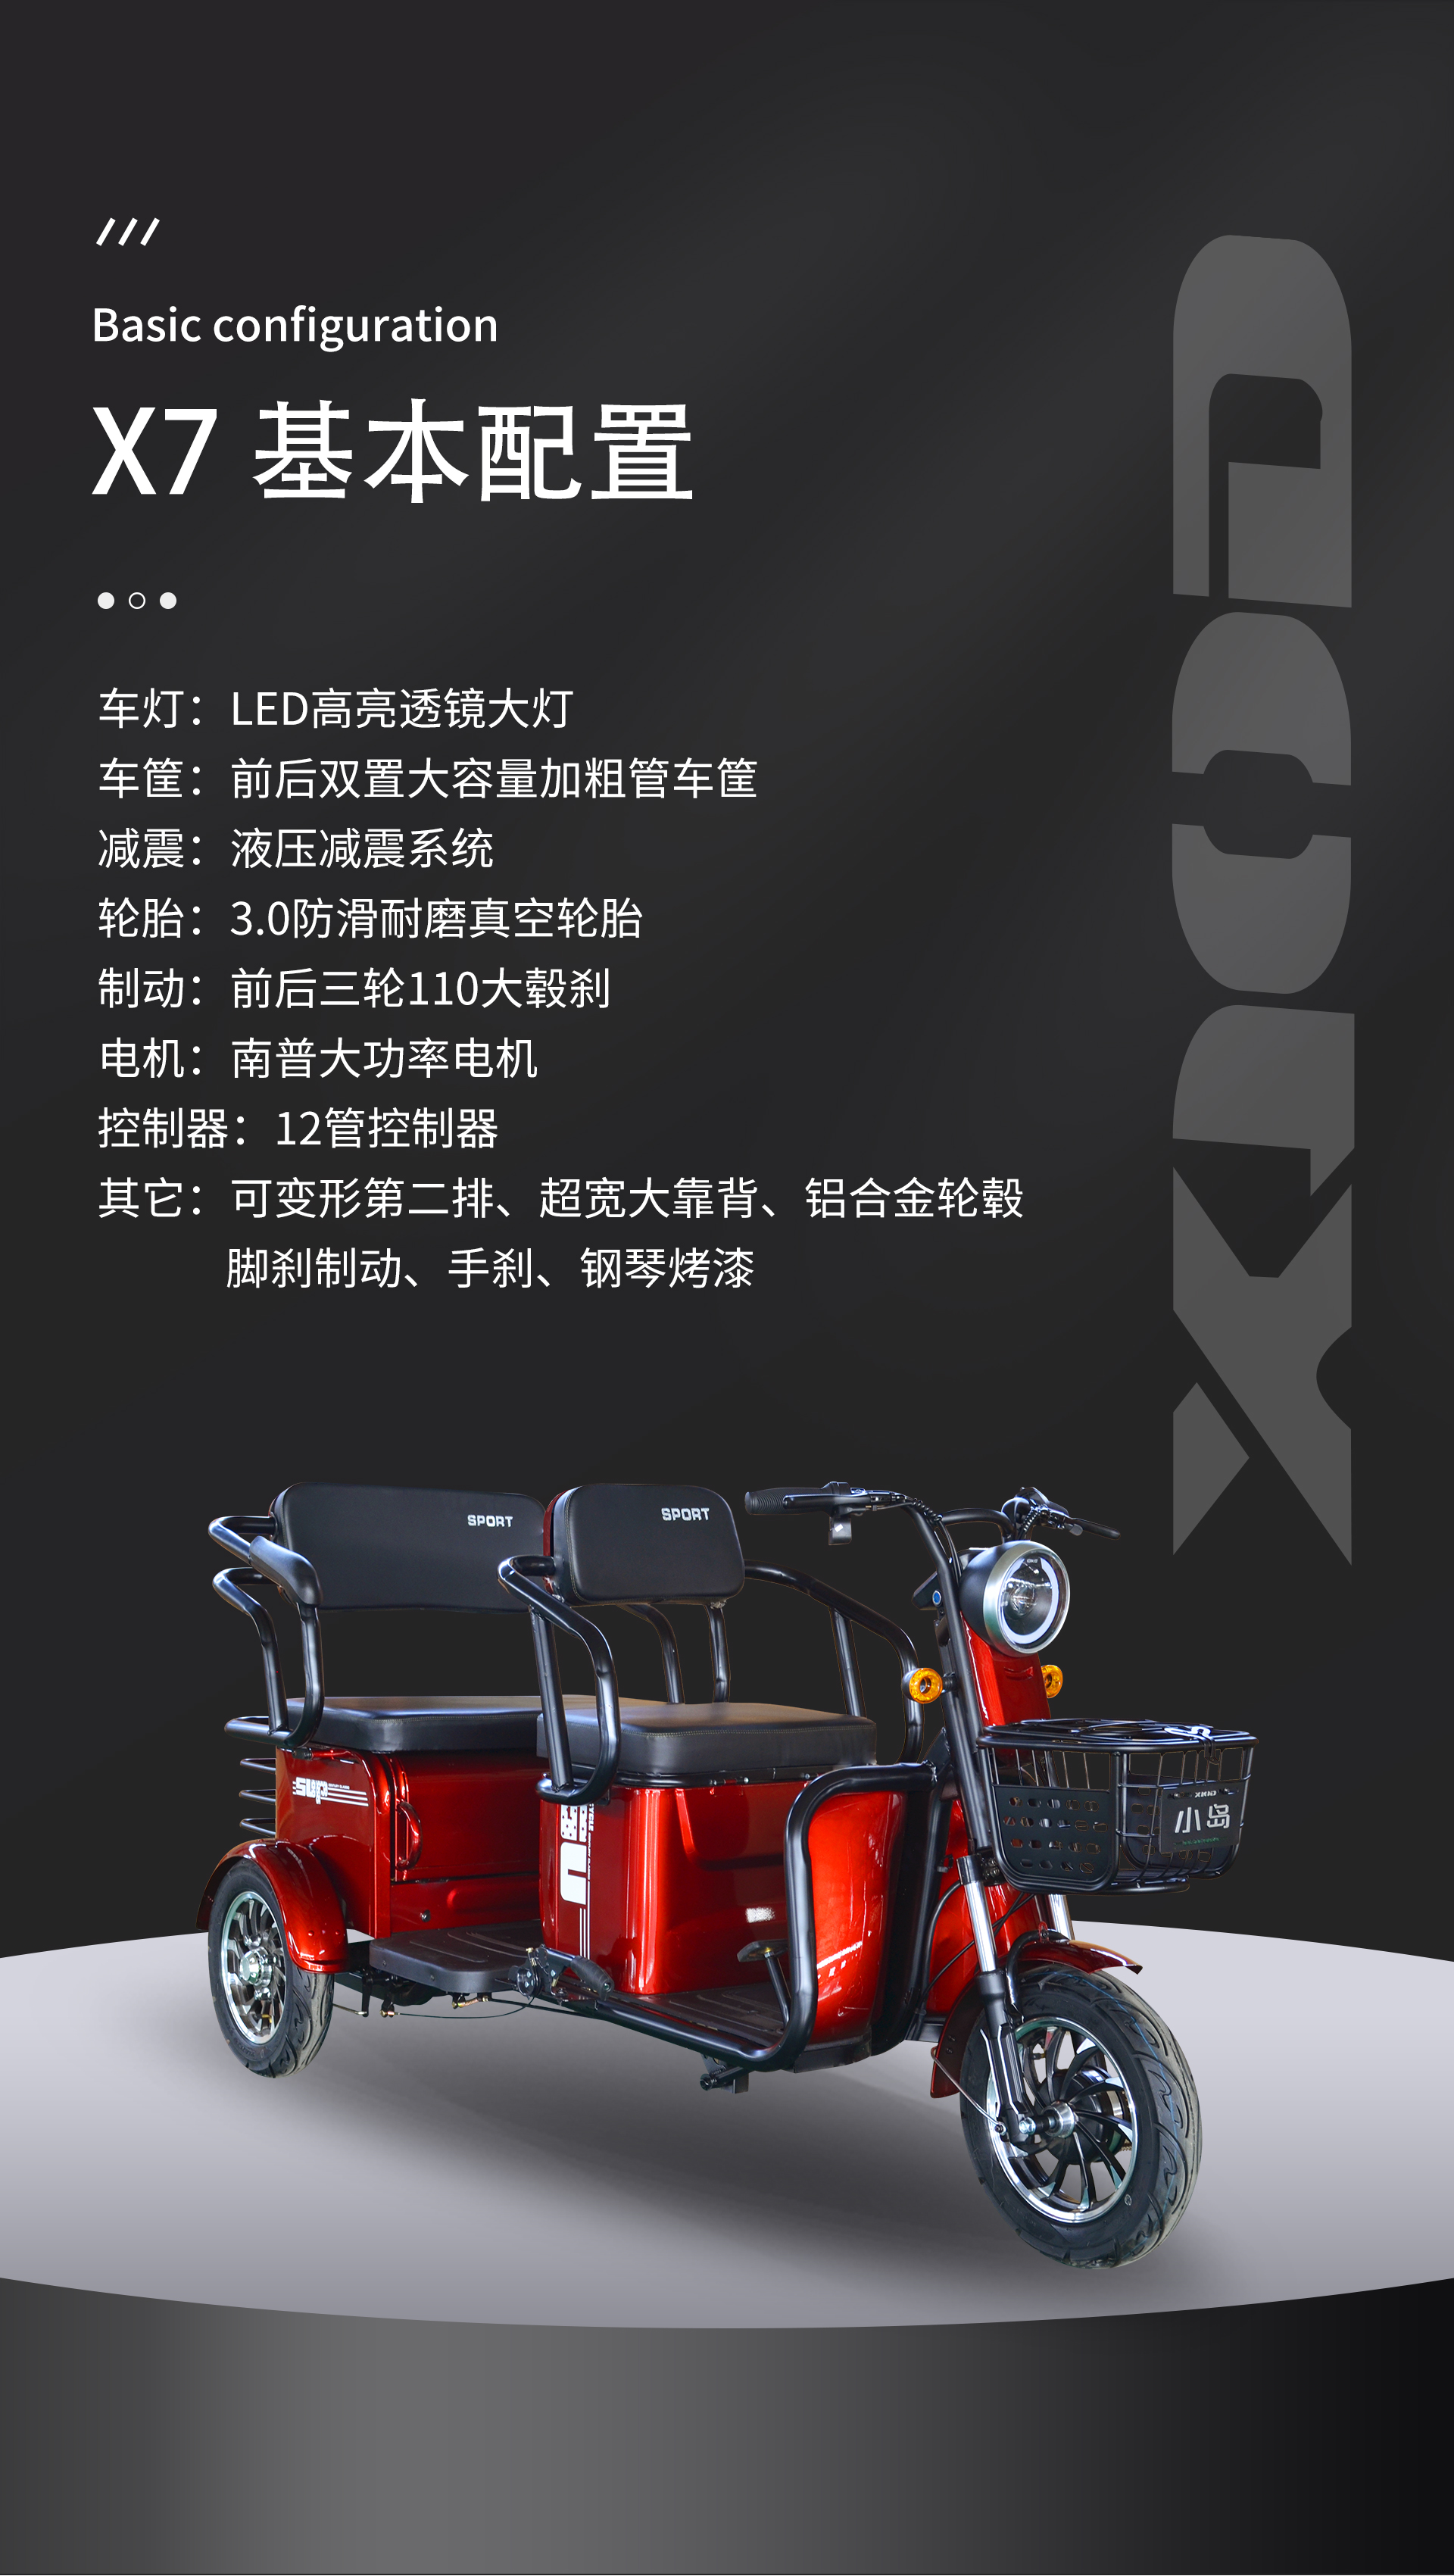 2020年11月26日-小岛-三轮车-X7-详情页_05.jpg